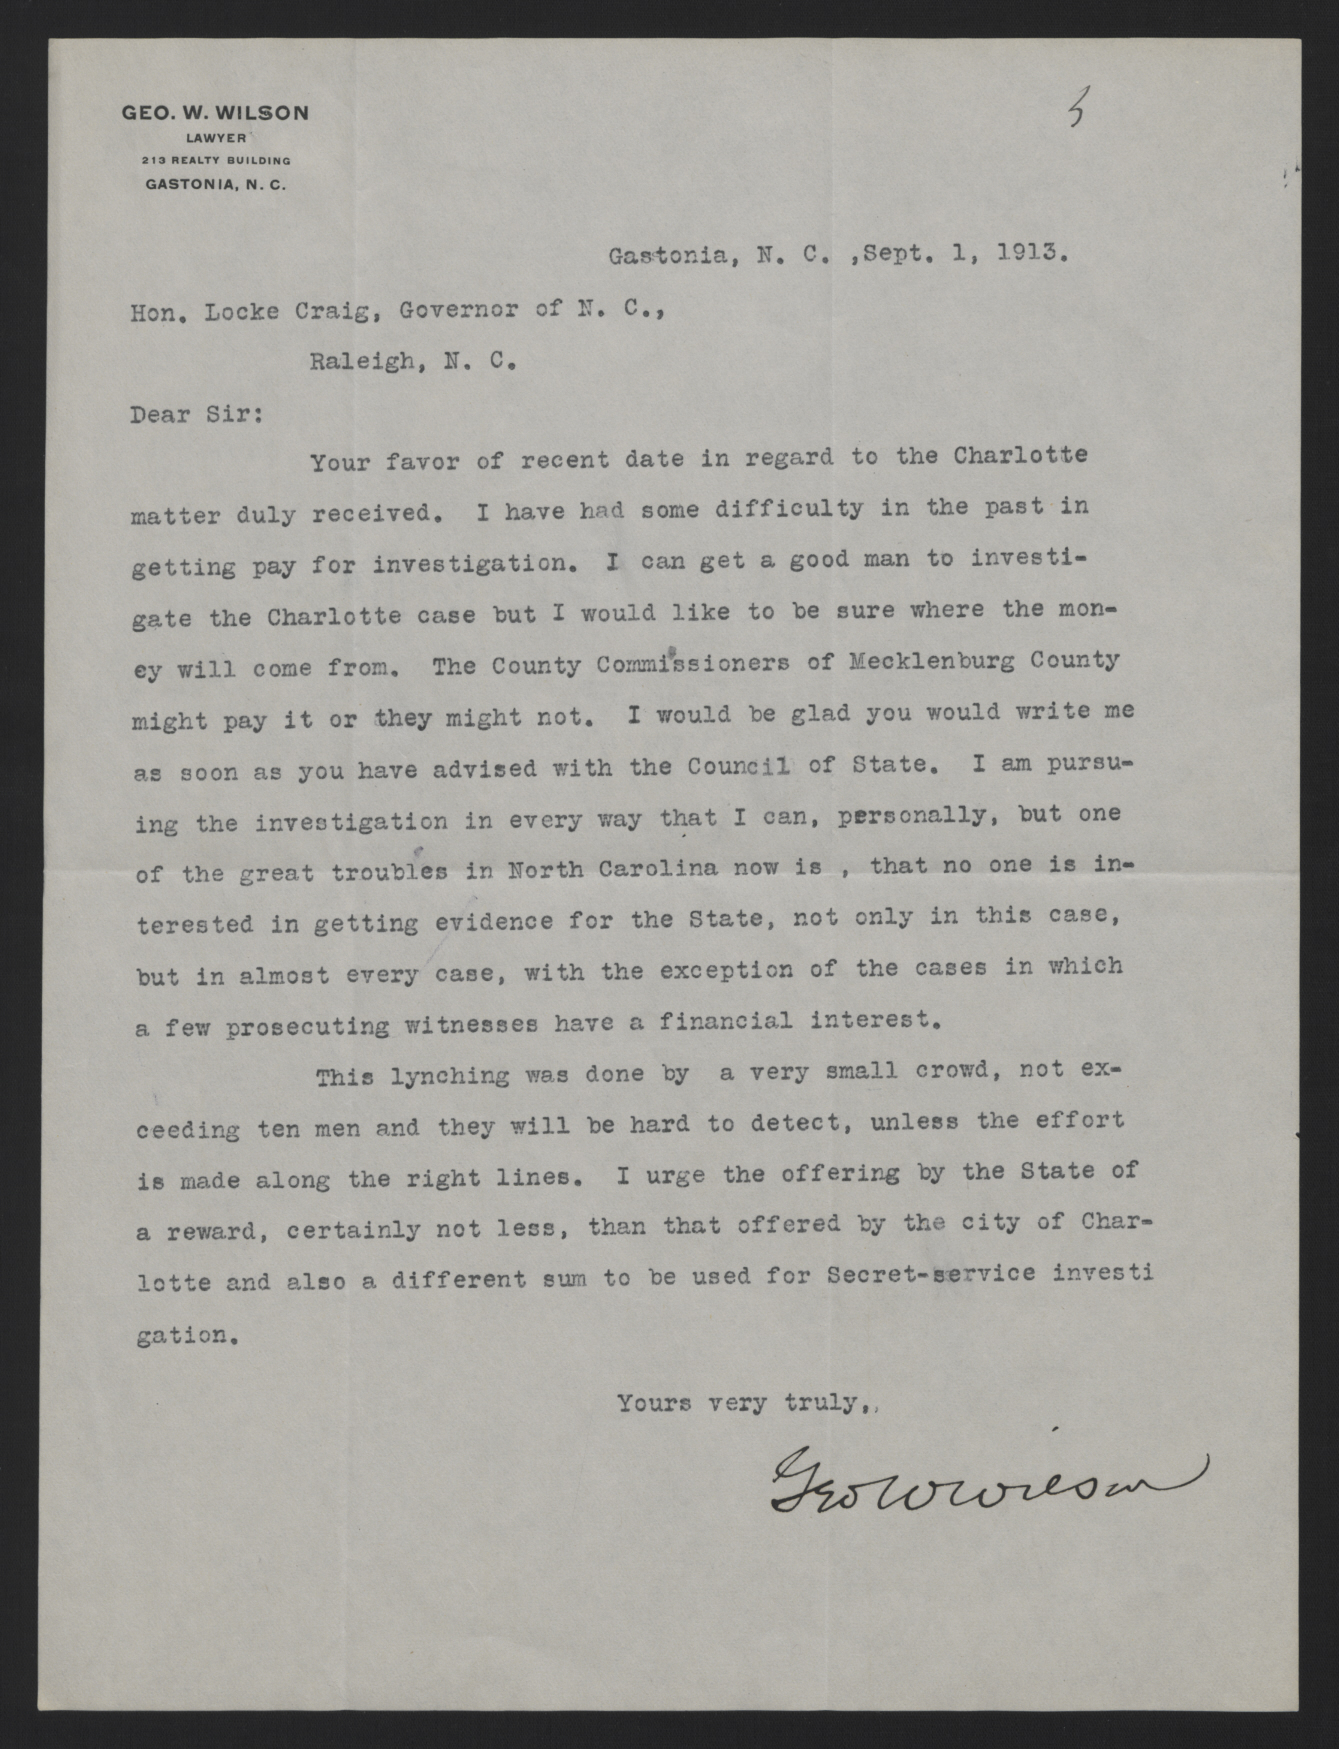 Letter from Wilson to Craig, September 1, 1913